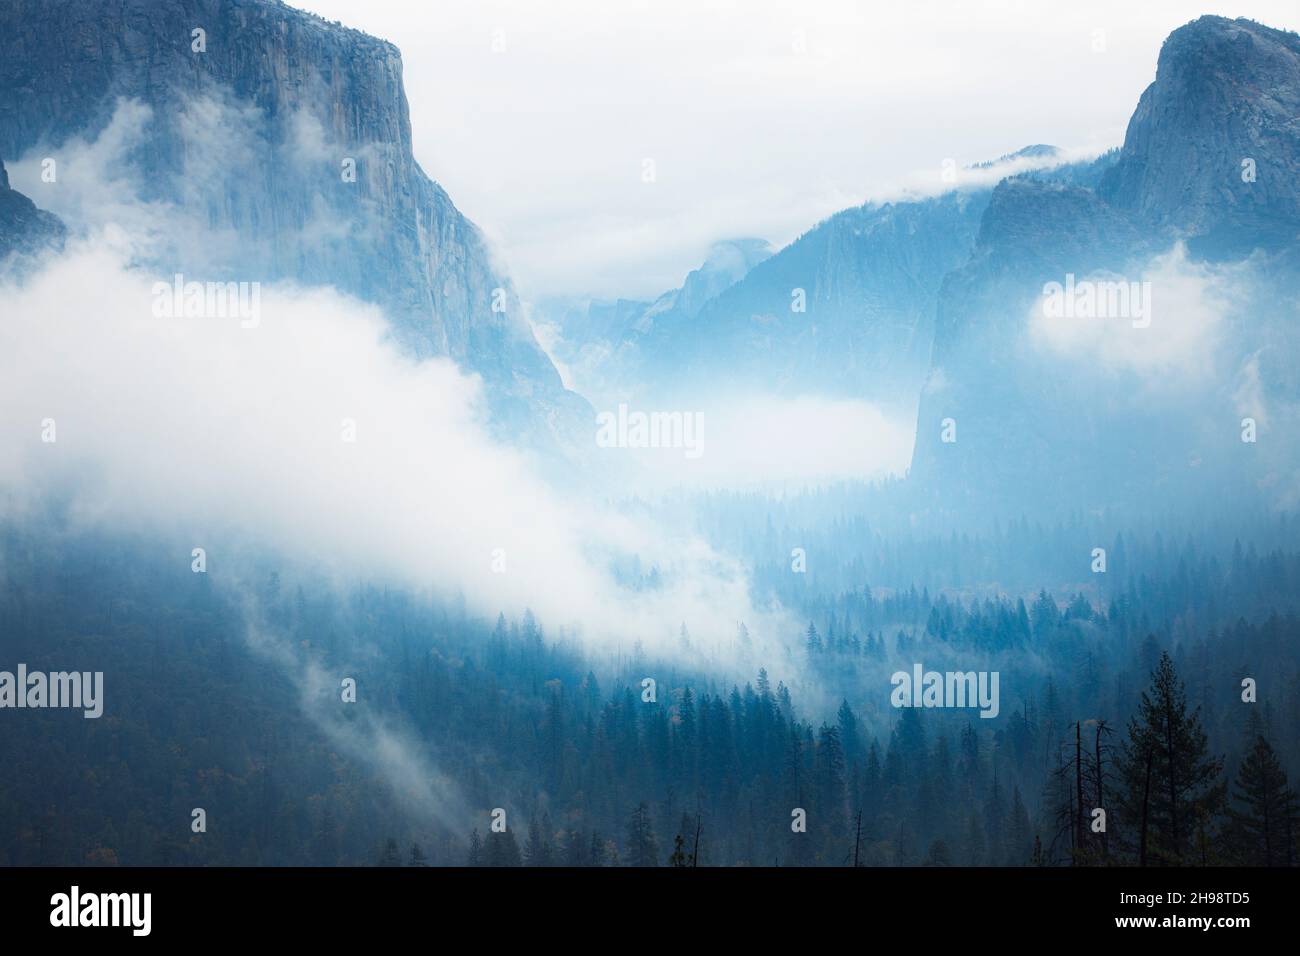 El invierno comienza su dominio en la nube y el paisaje empañado del valle de Yosemite. Parque Nacional Yosemite, California. Foto de stock